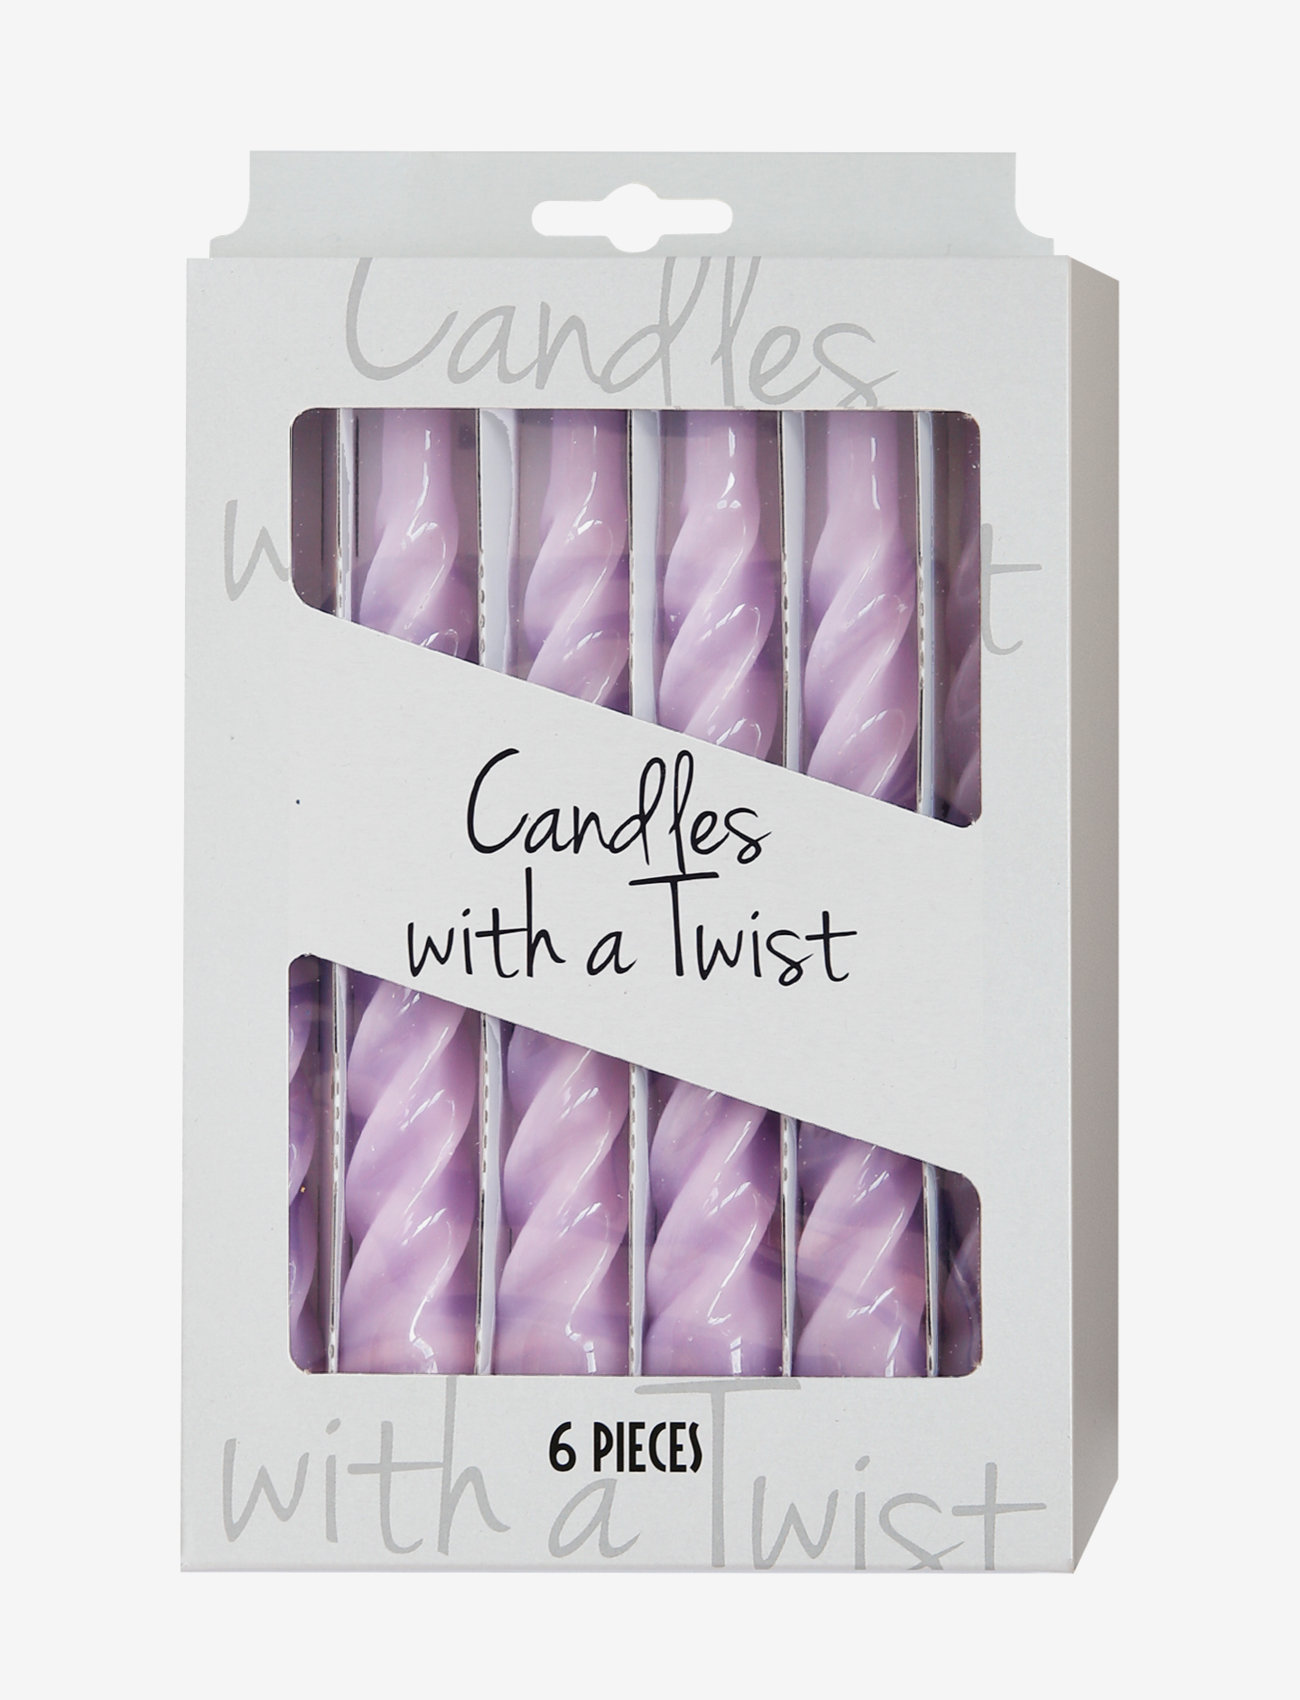 Kunstindustrien - Twisted Candles, 6 piece box - de laveste prisene - lilac - 1